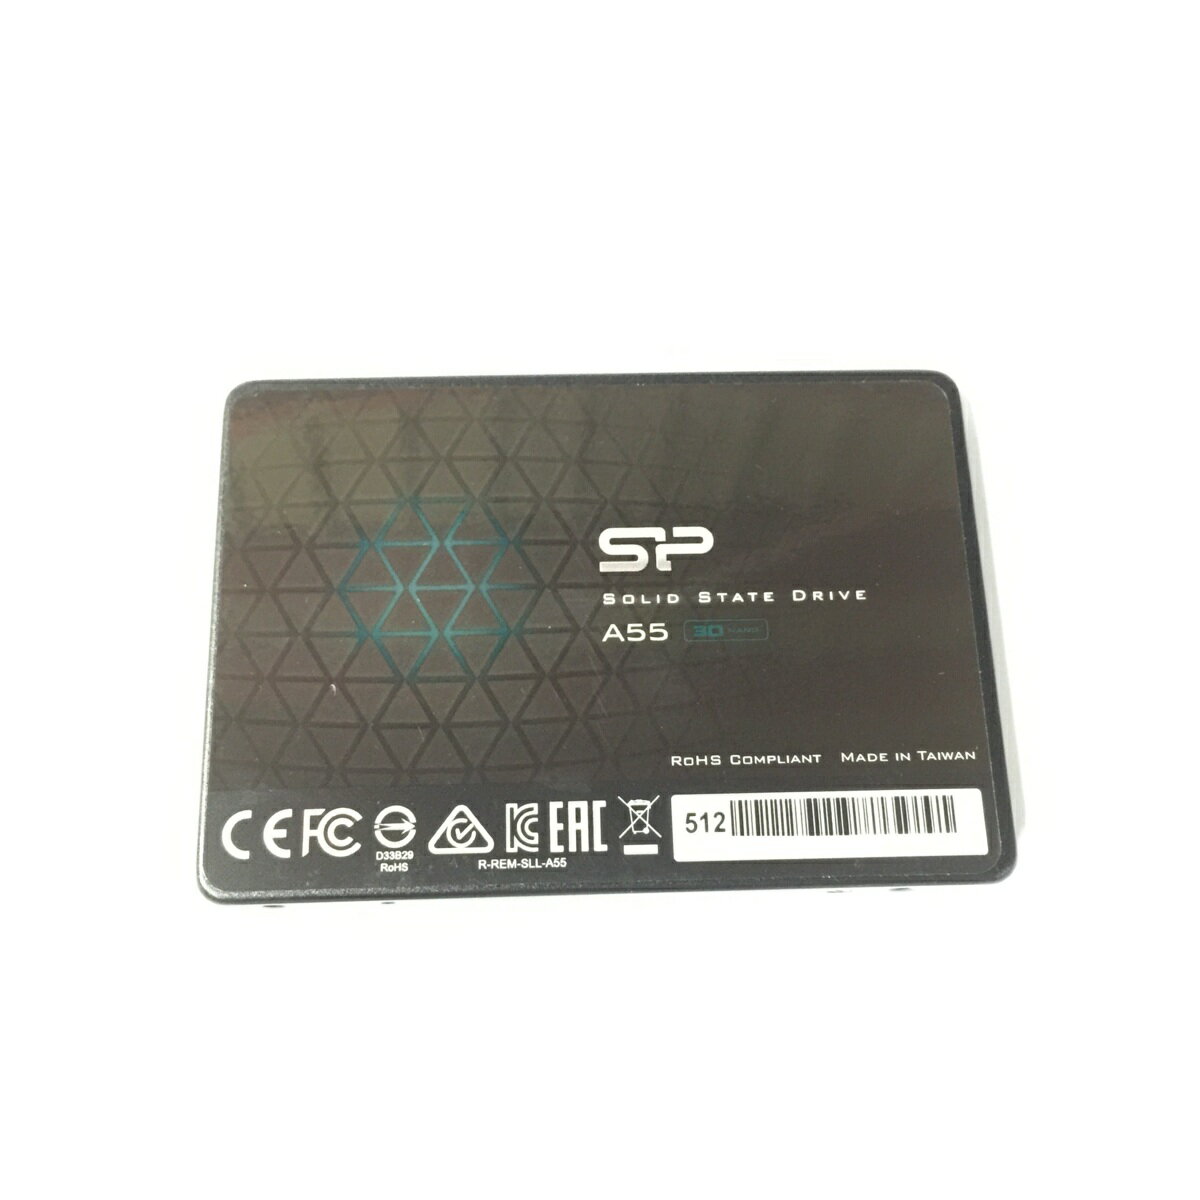 シリコンパワー SiliconPower 2.5インチSSD 7mm厚 SATA SP512GBSS3A55S25 512GB A55シリーズ 元箱なし